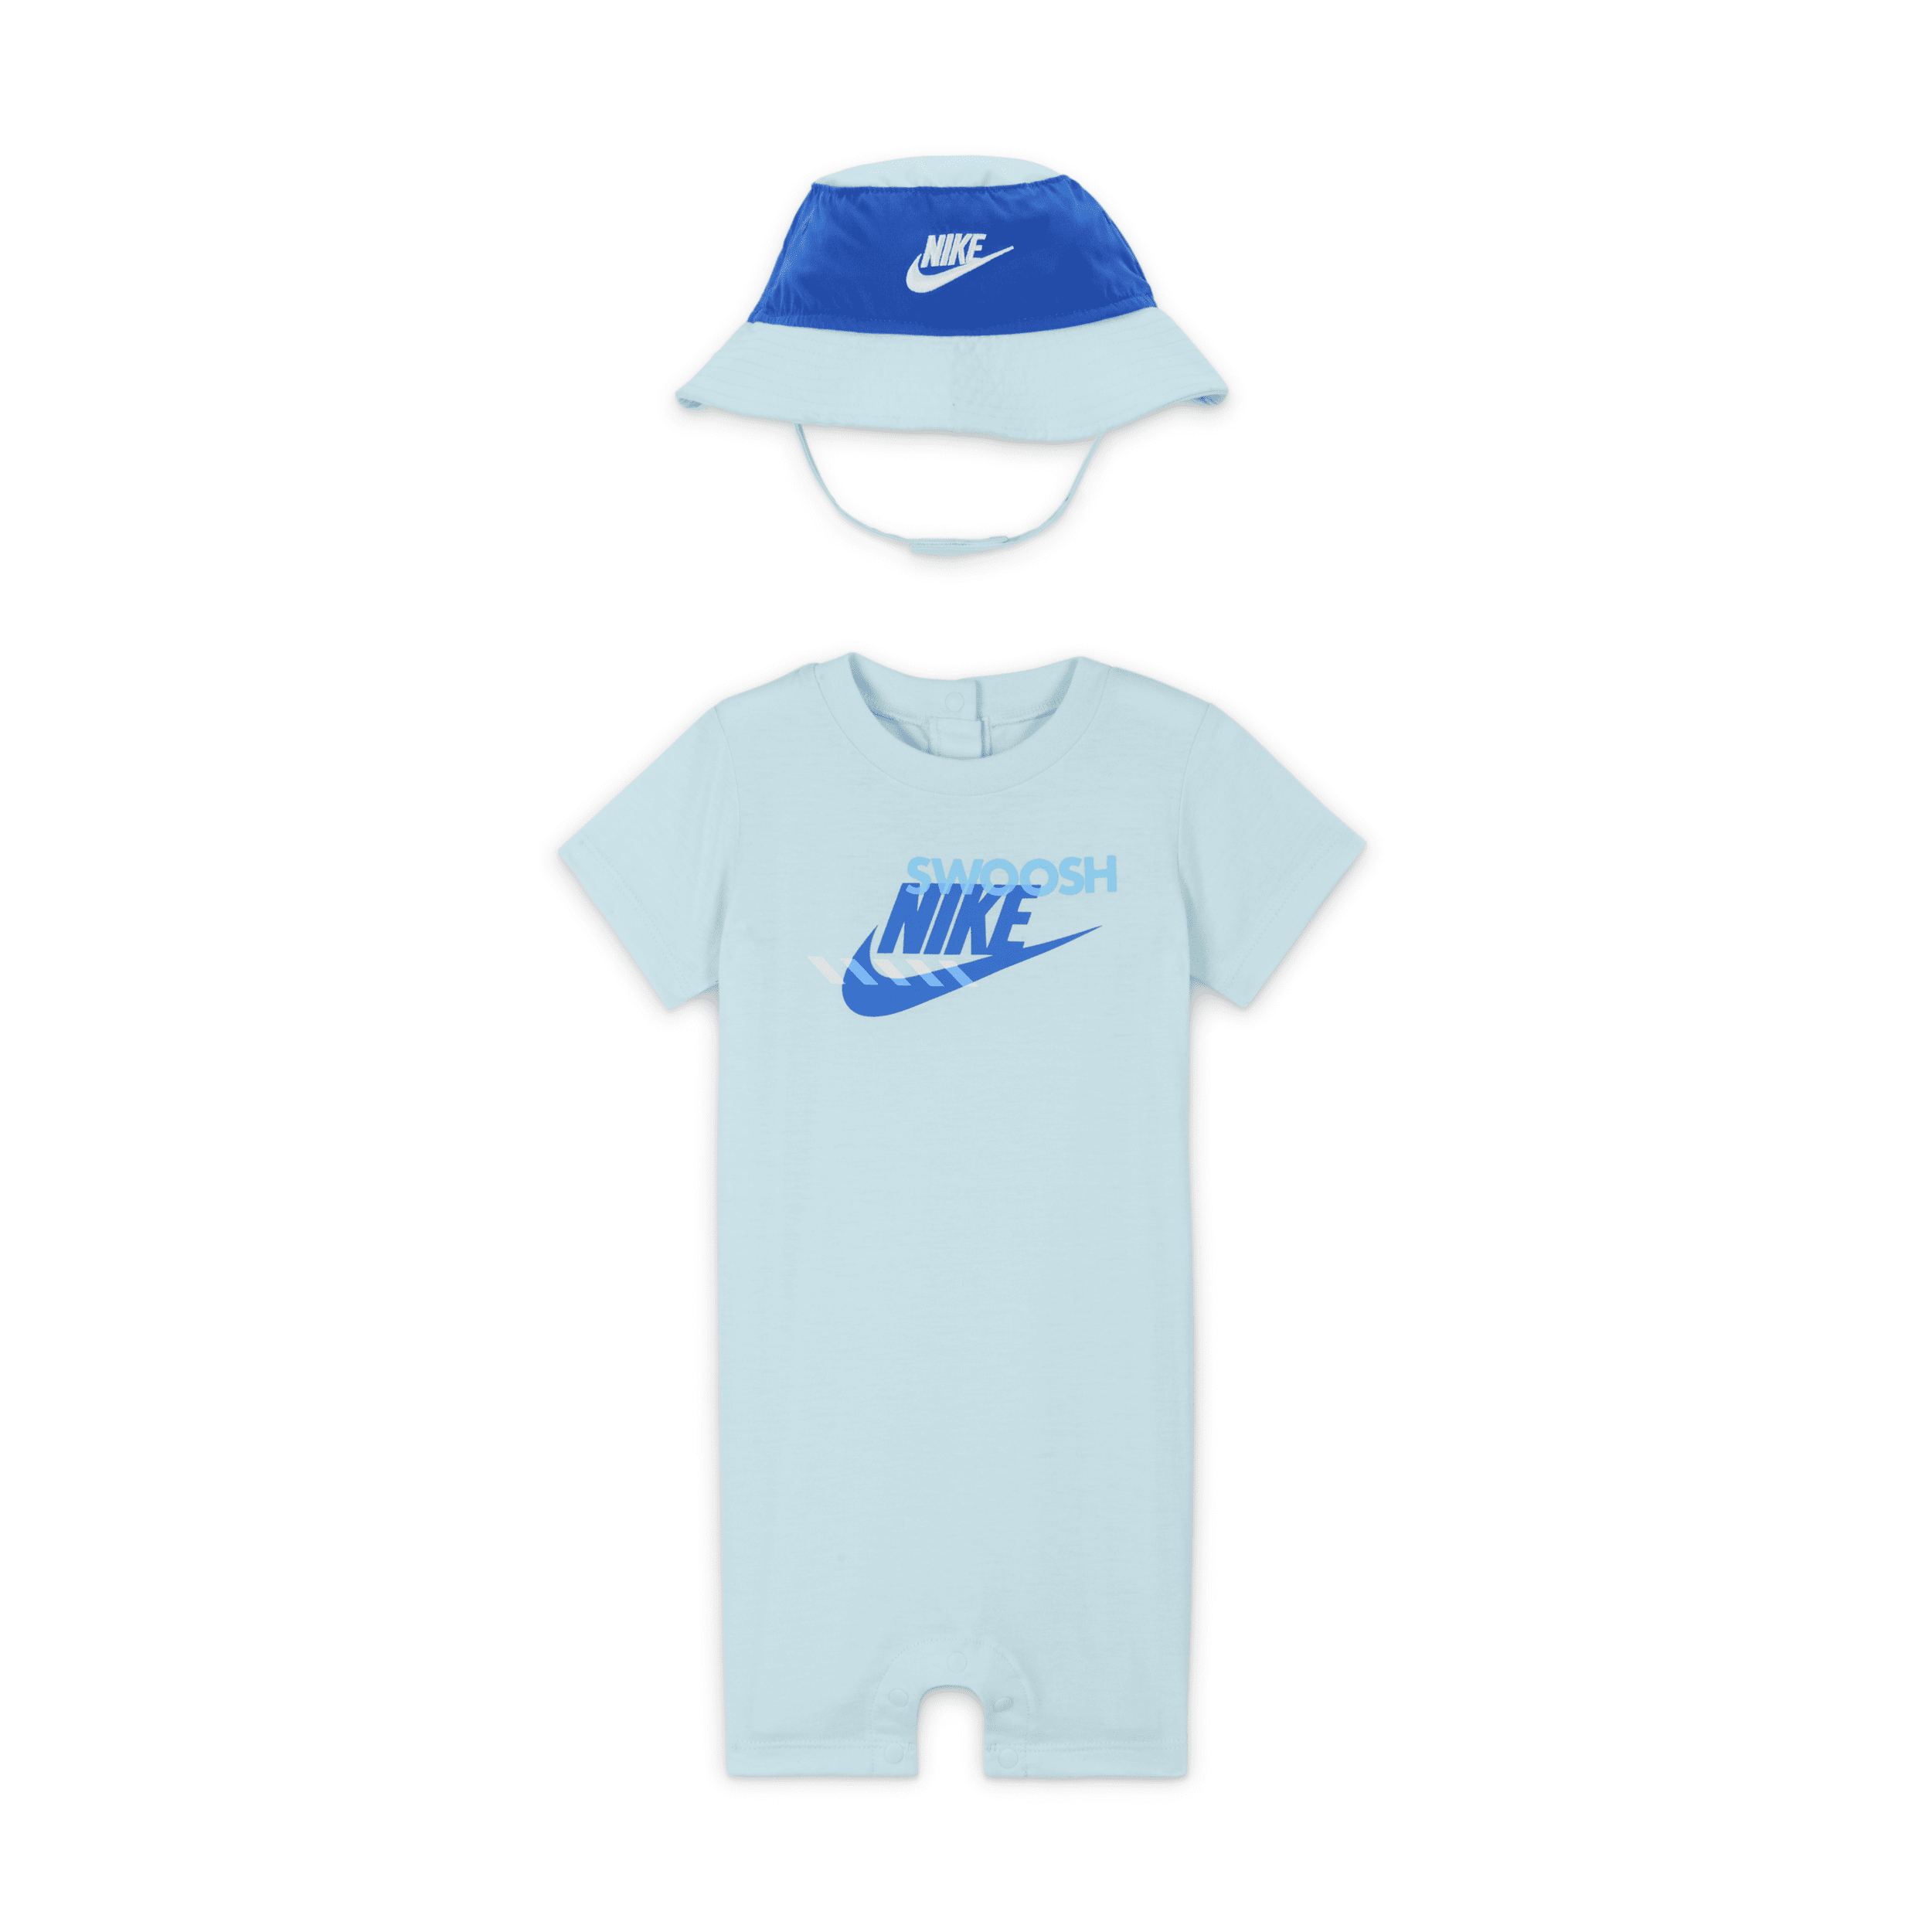 Nike Sportswear Pe Baby (12-24m) Romper And Bucket Hat Set In Blue